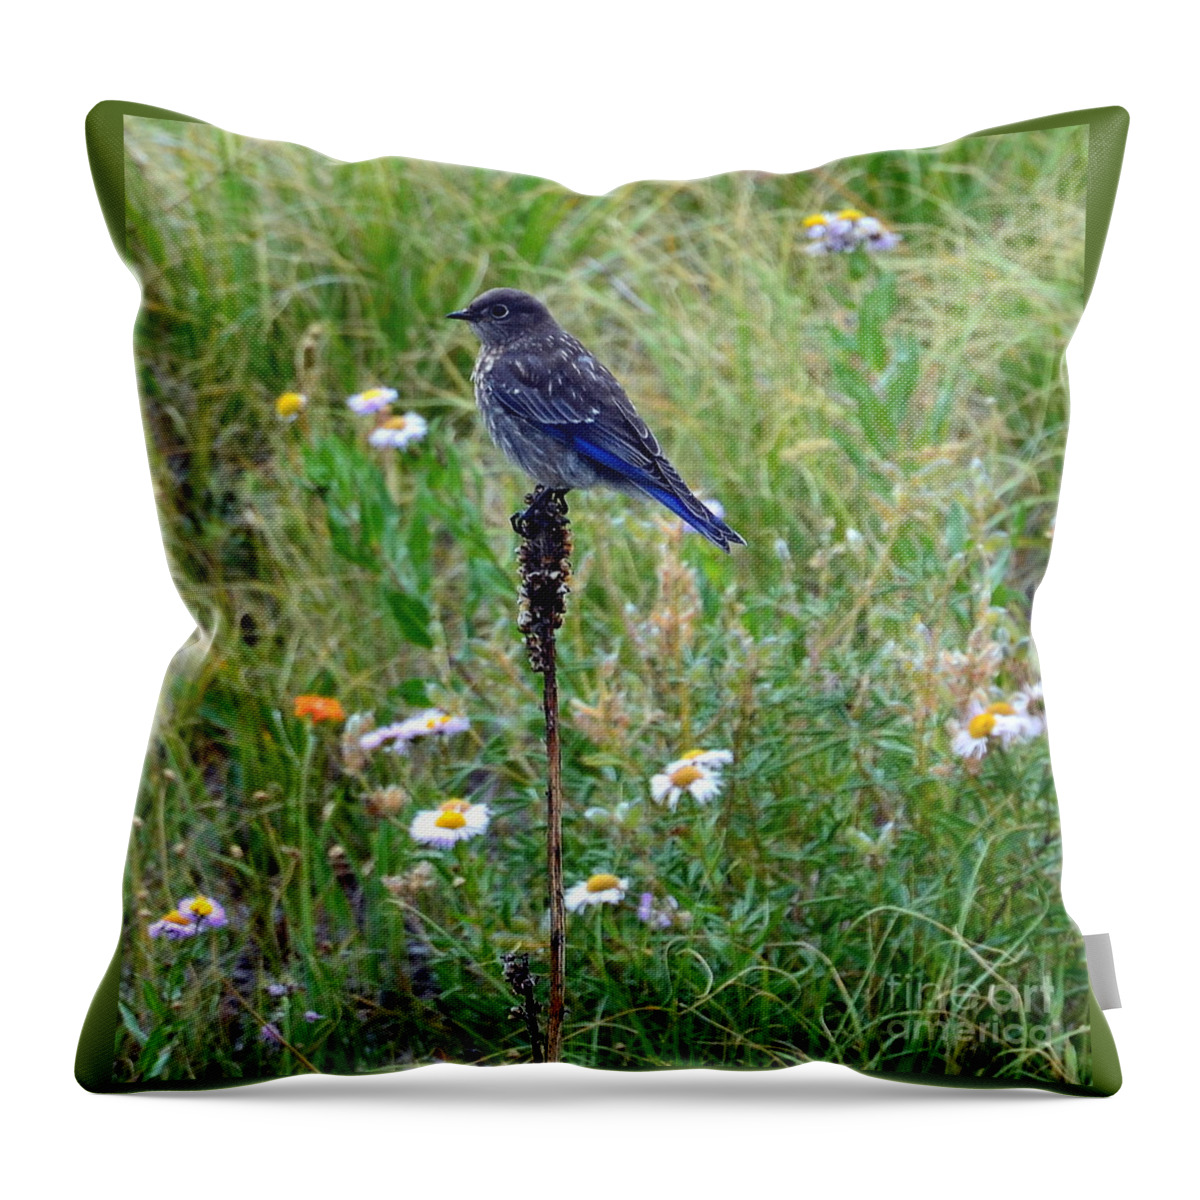 Bluebird Throw Pillow featuring the photograph Bluebird Perch by Dorrene BrownButterfield